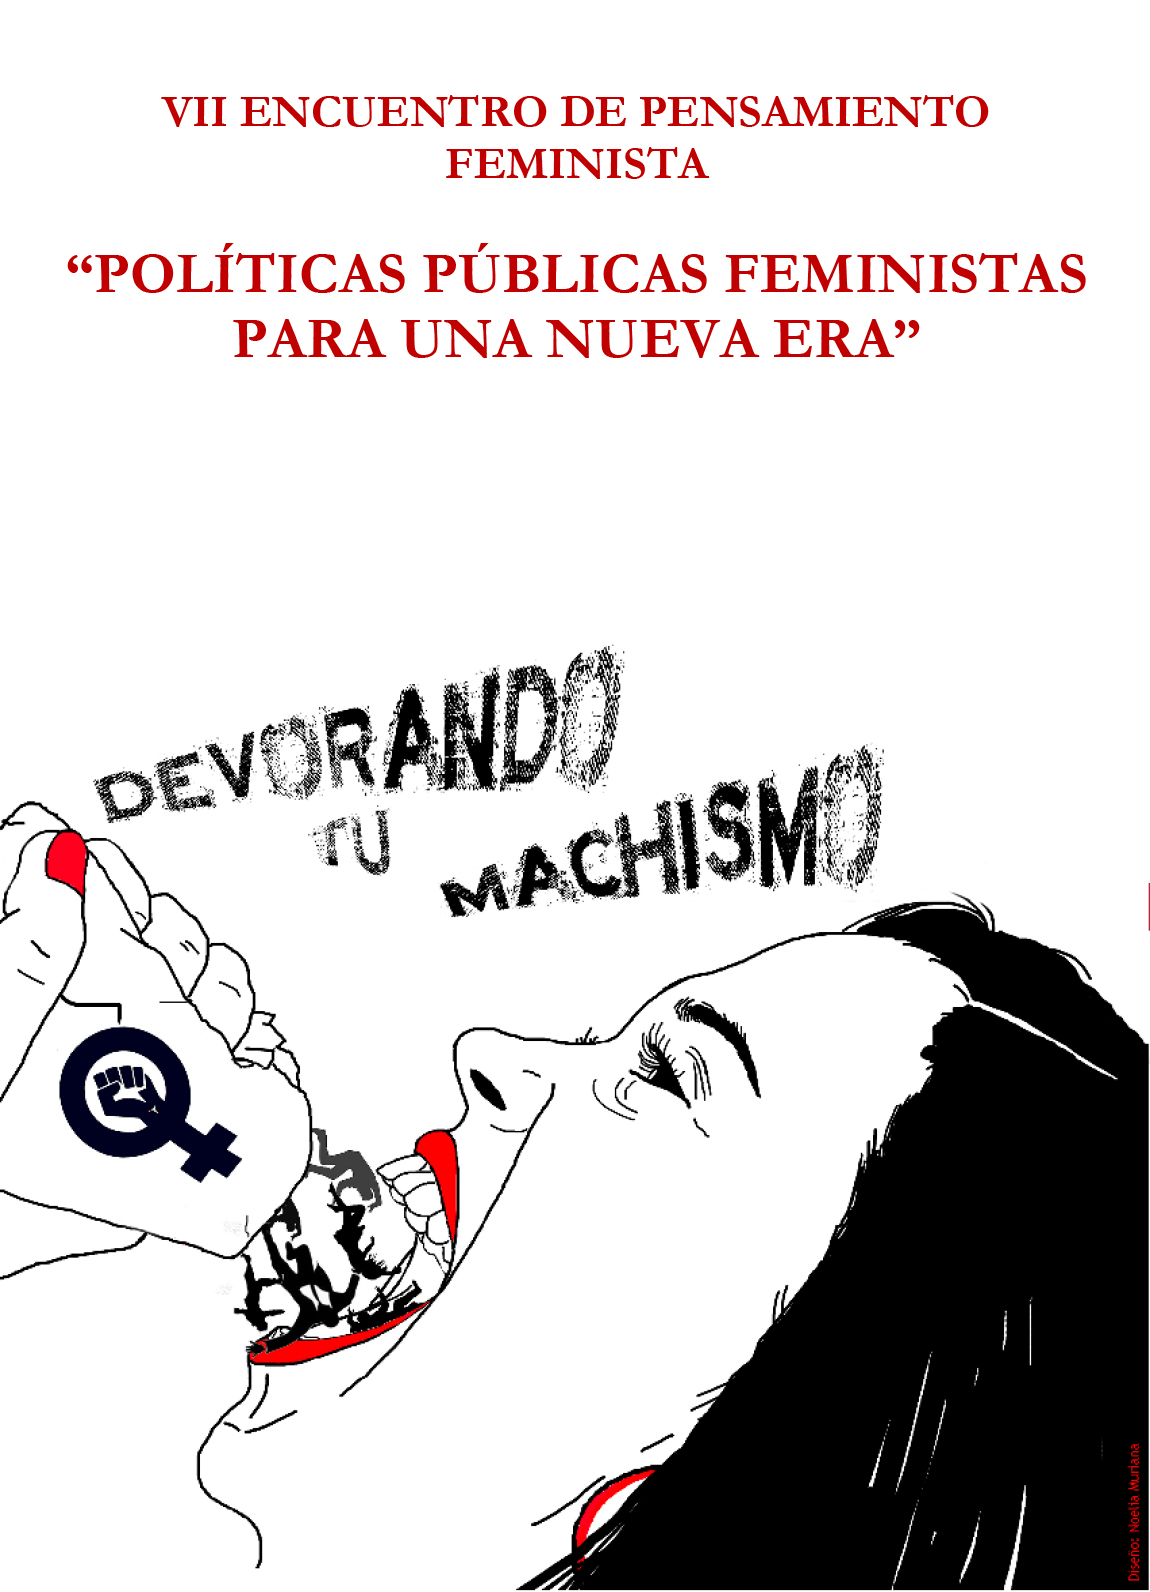 VII ENCUENTRO DE JORNADAS FEMINISTAS 2019